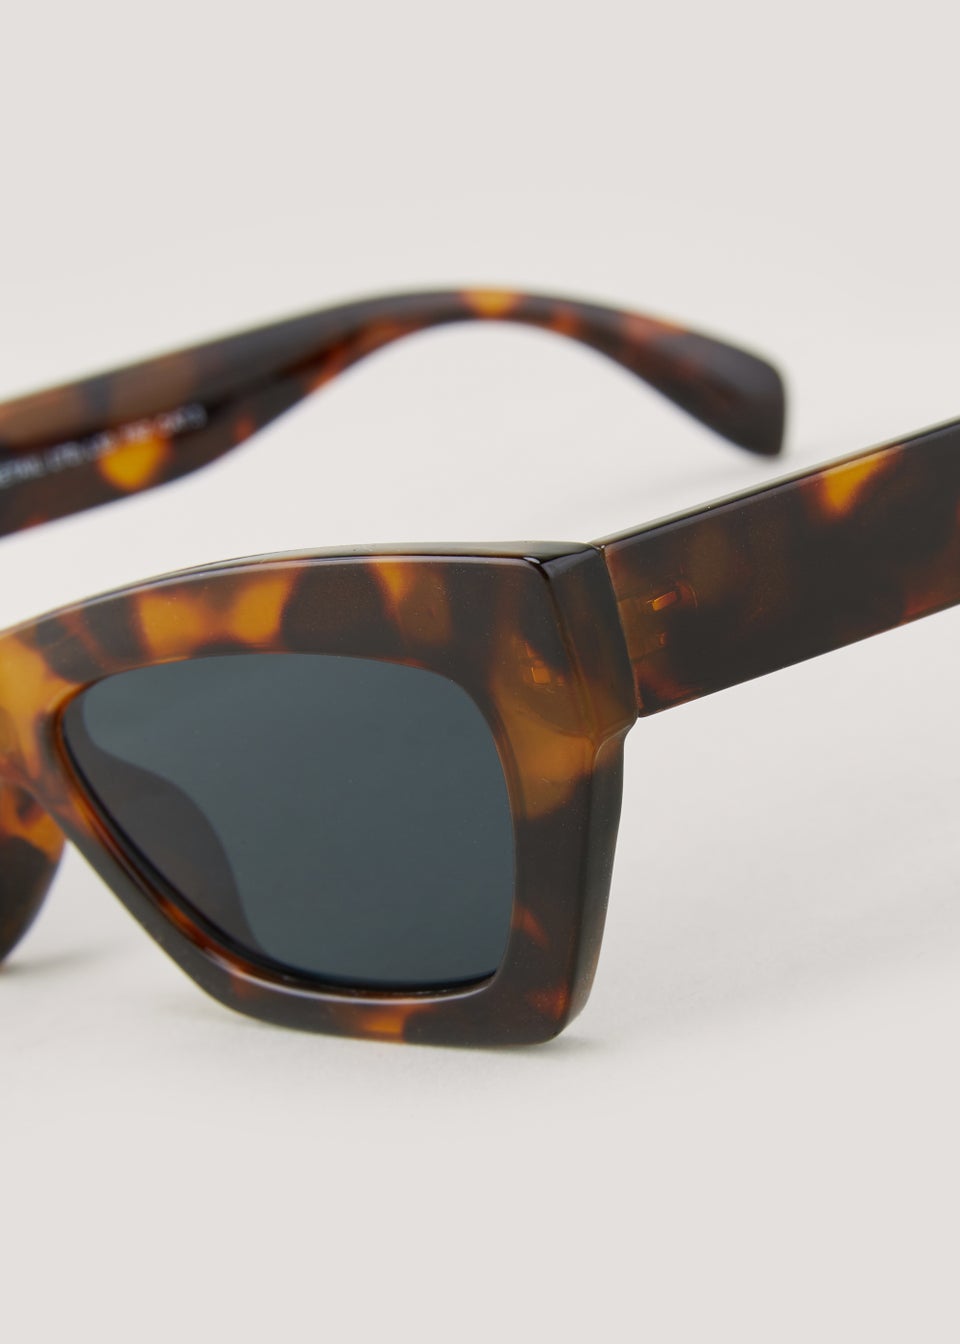 Brown Tortoise Shell Angular Sunglasses